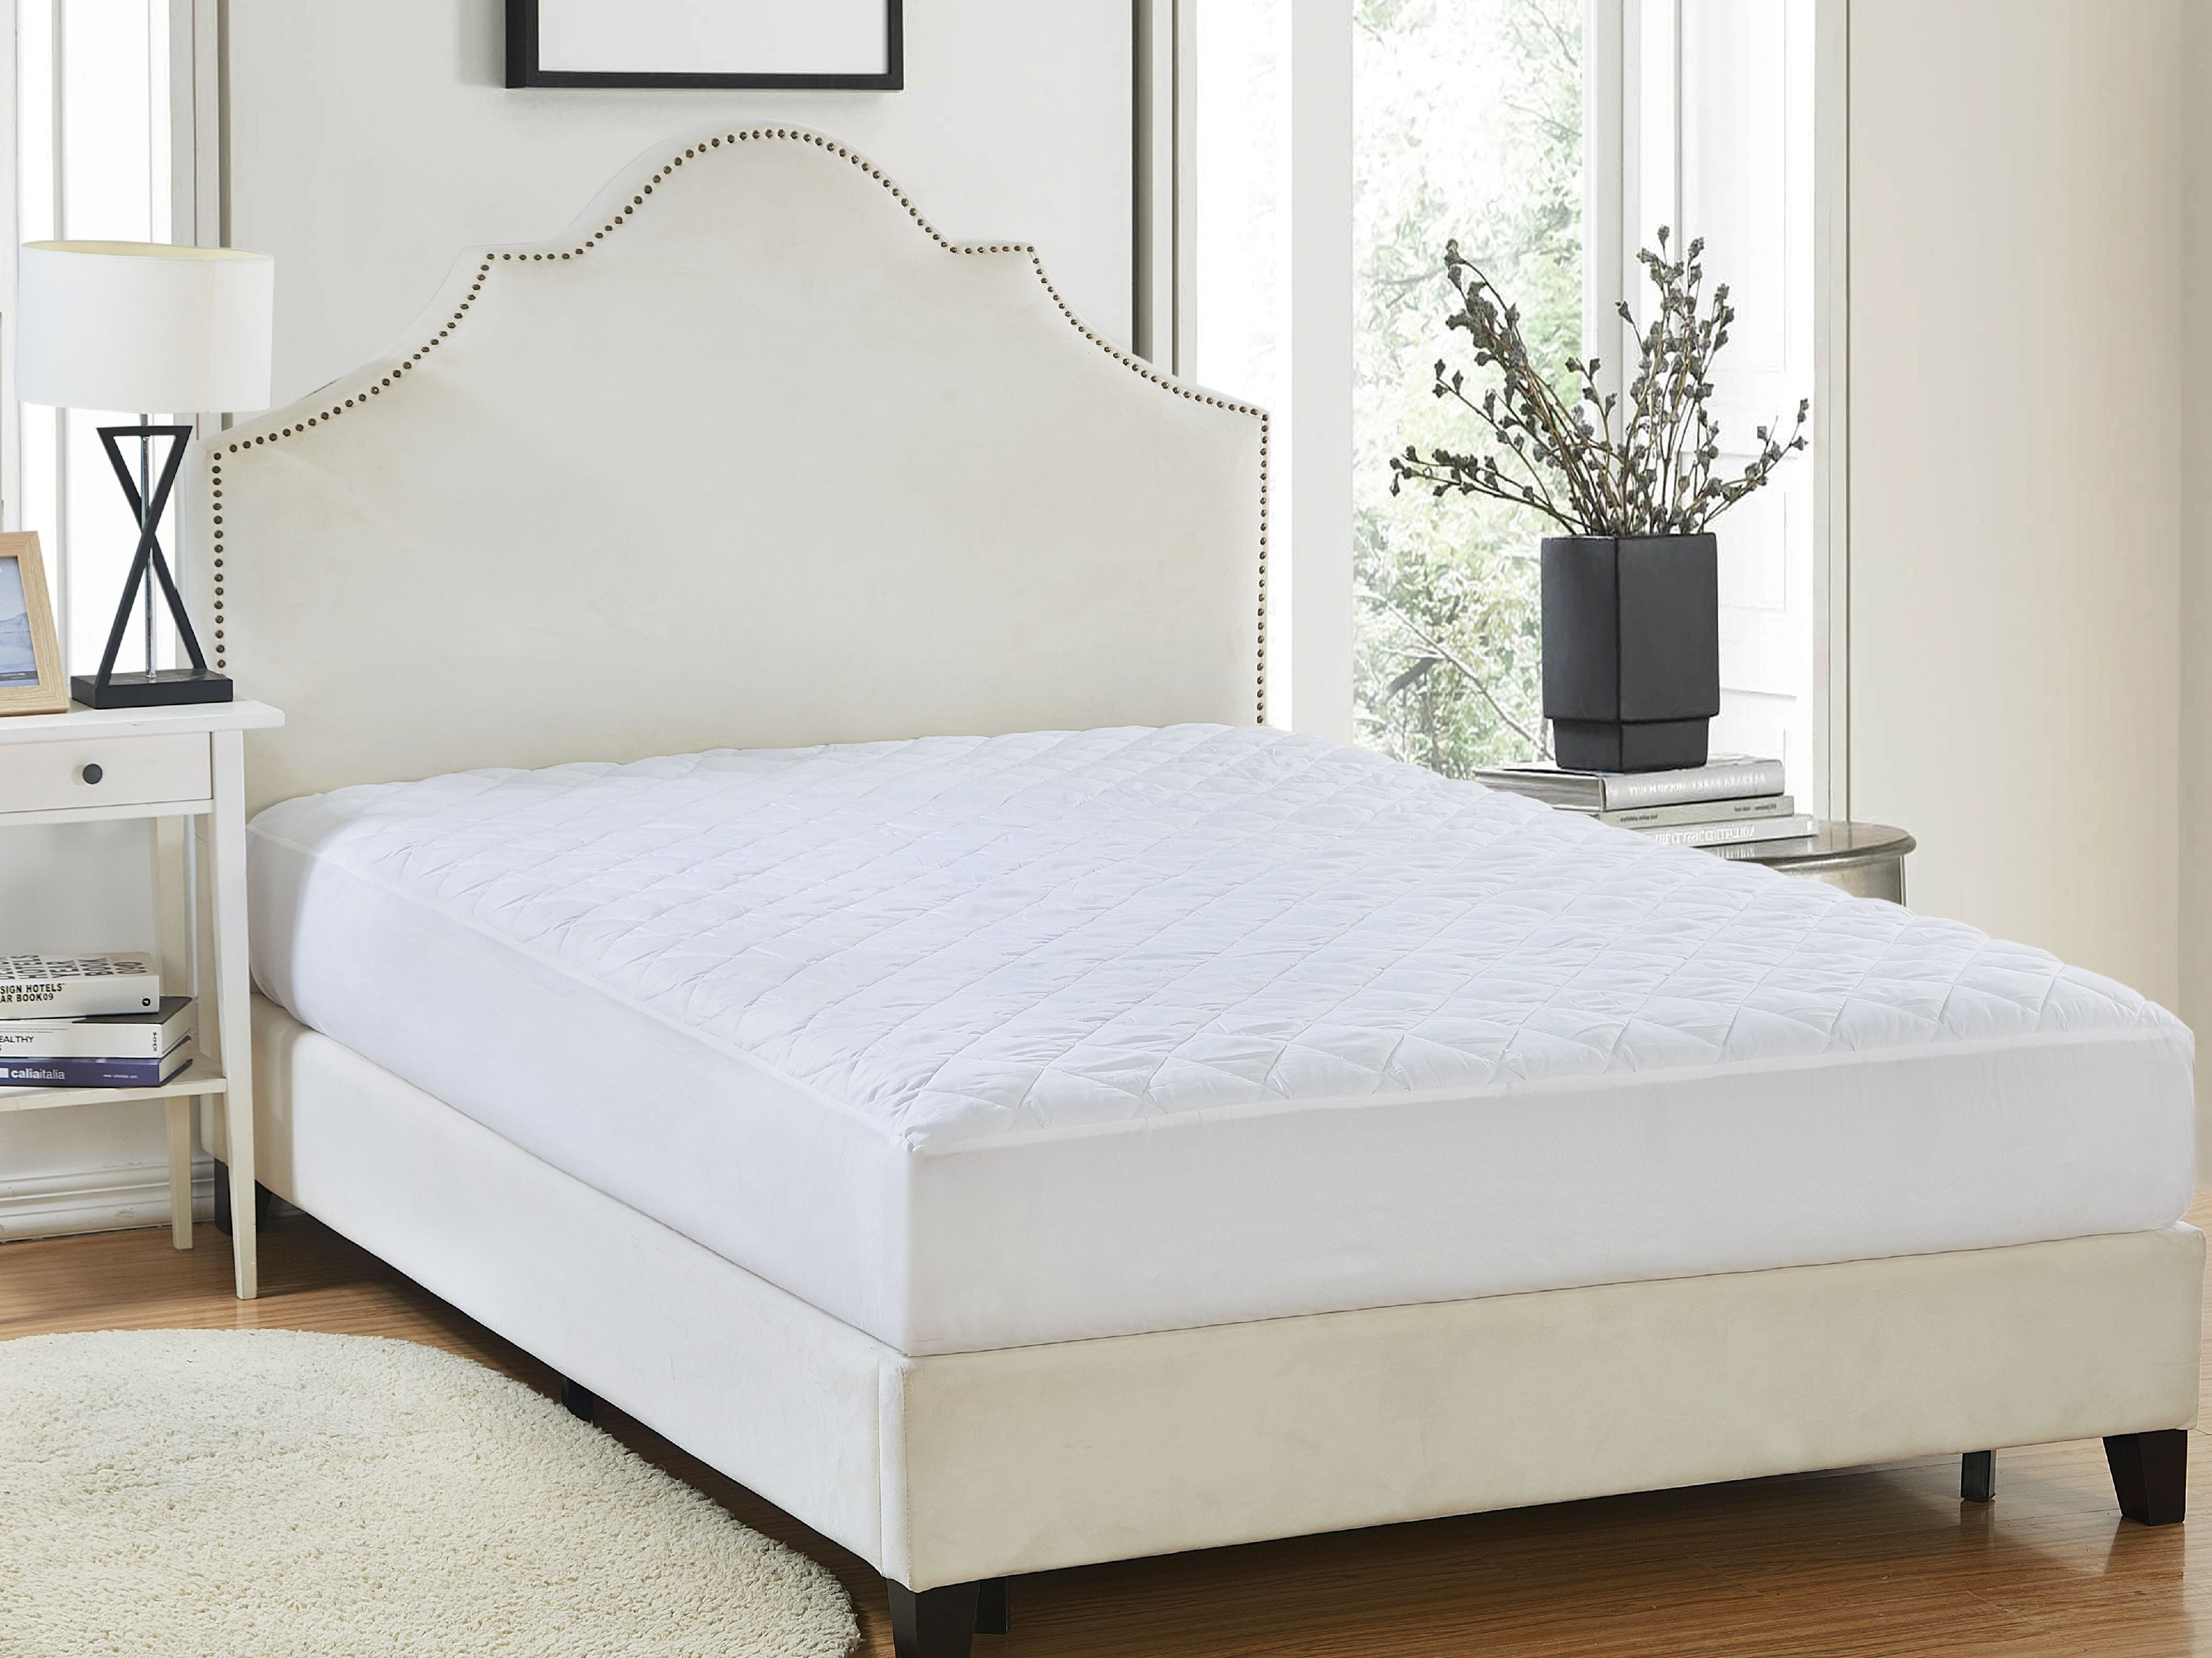 walmart queen bed mattress cover